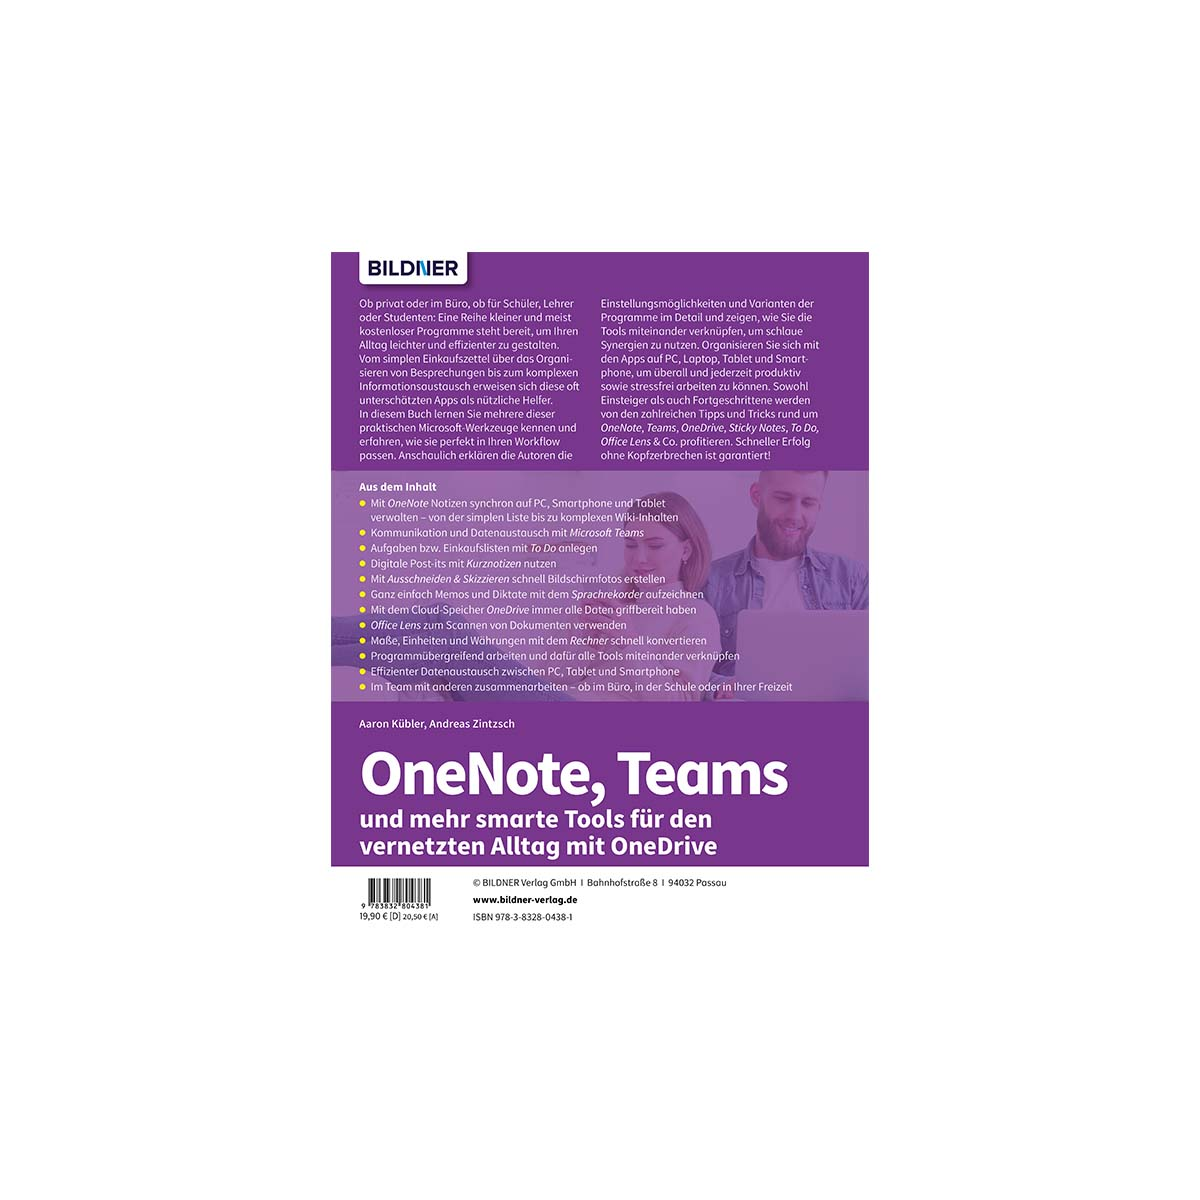 und vernetzten für Microsoft-Alltag Tools mehr smarte Teams OneNote, den